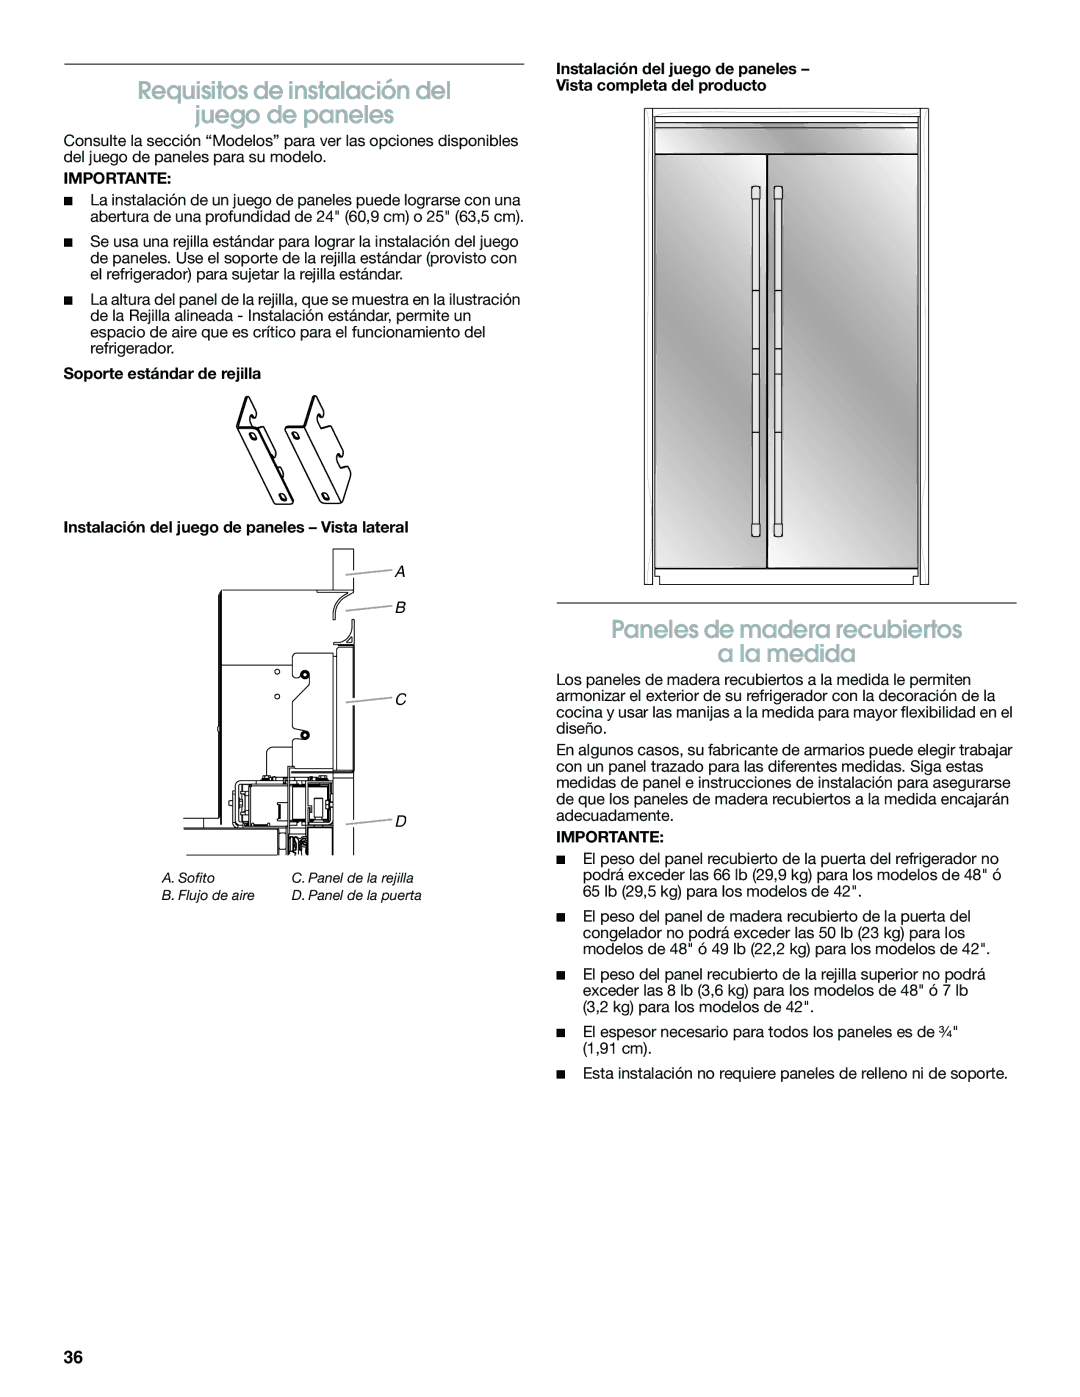 Jenn-Air W10379136A manual Requisitos de instalación del Juego de paneles, Paneles de madera recubiertos La medida 